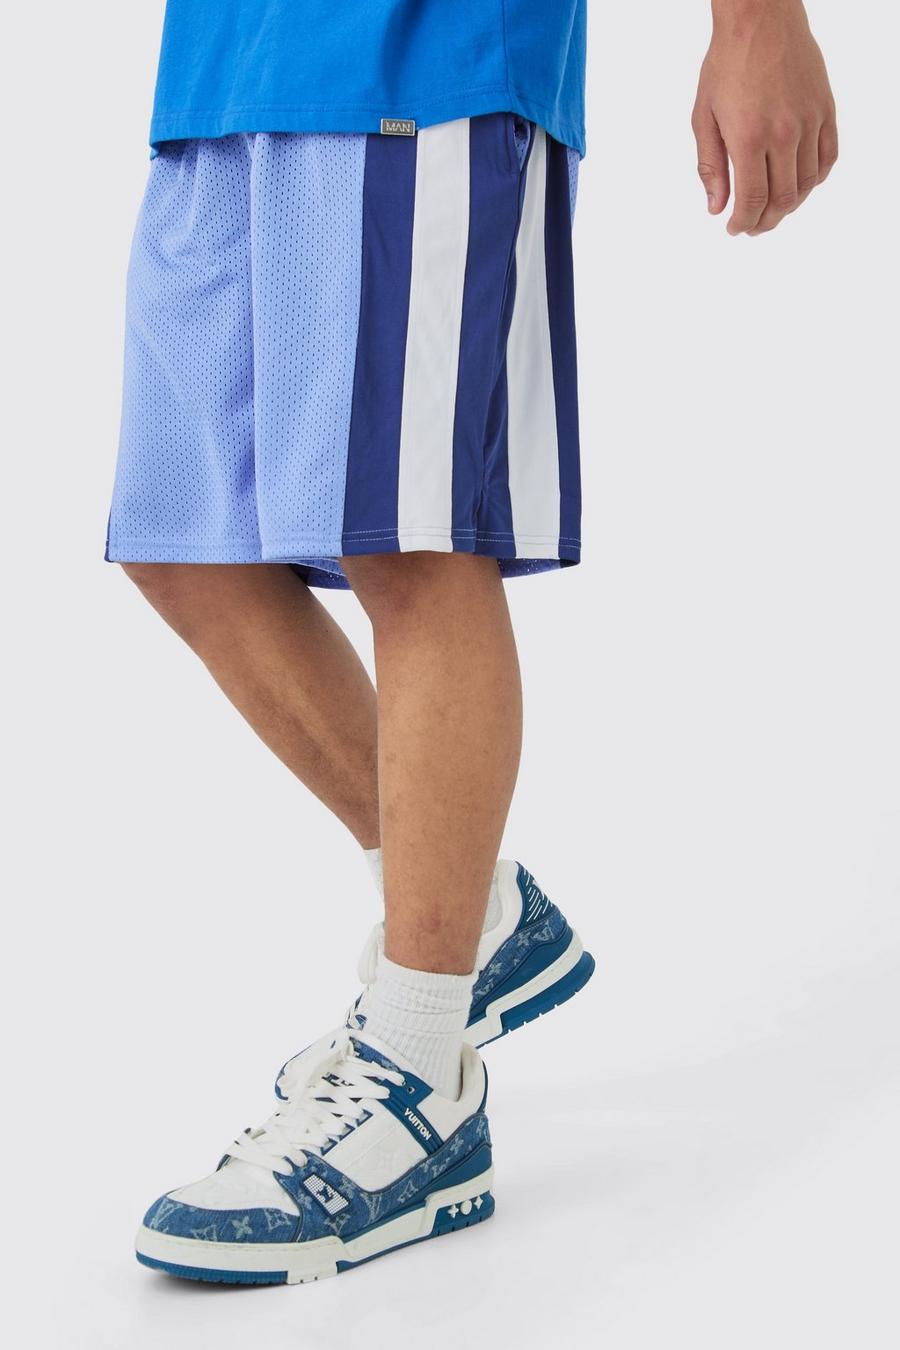 Pantalón corto de baloncesto de malla con colores en bloque, Cobalt